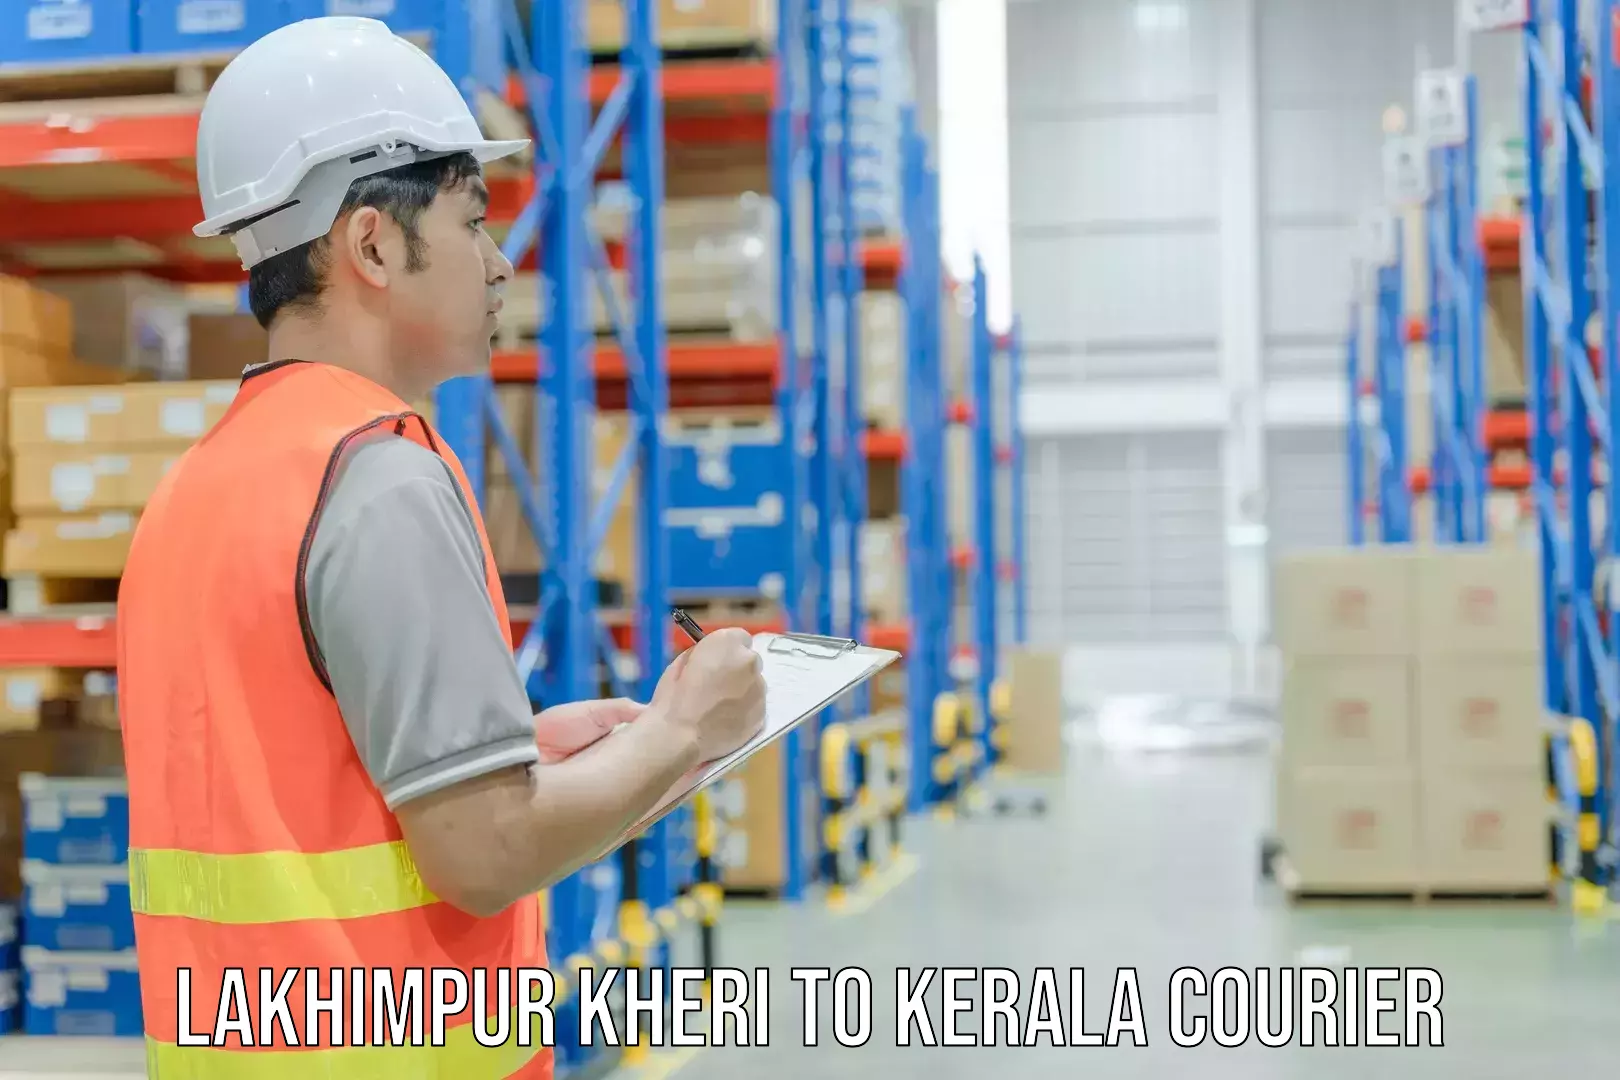 Fast shipping solutions Lakhimpur Kheri to Karimba